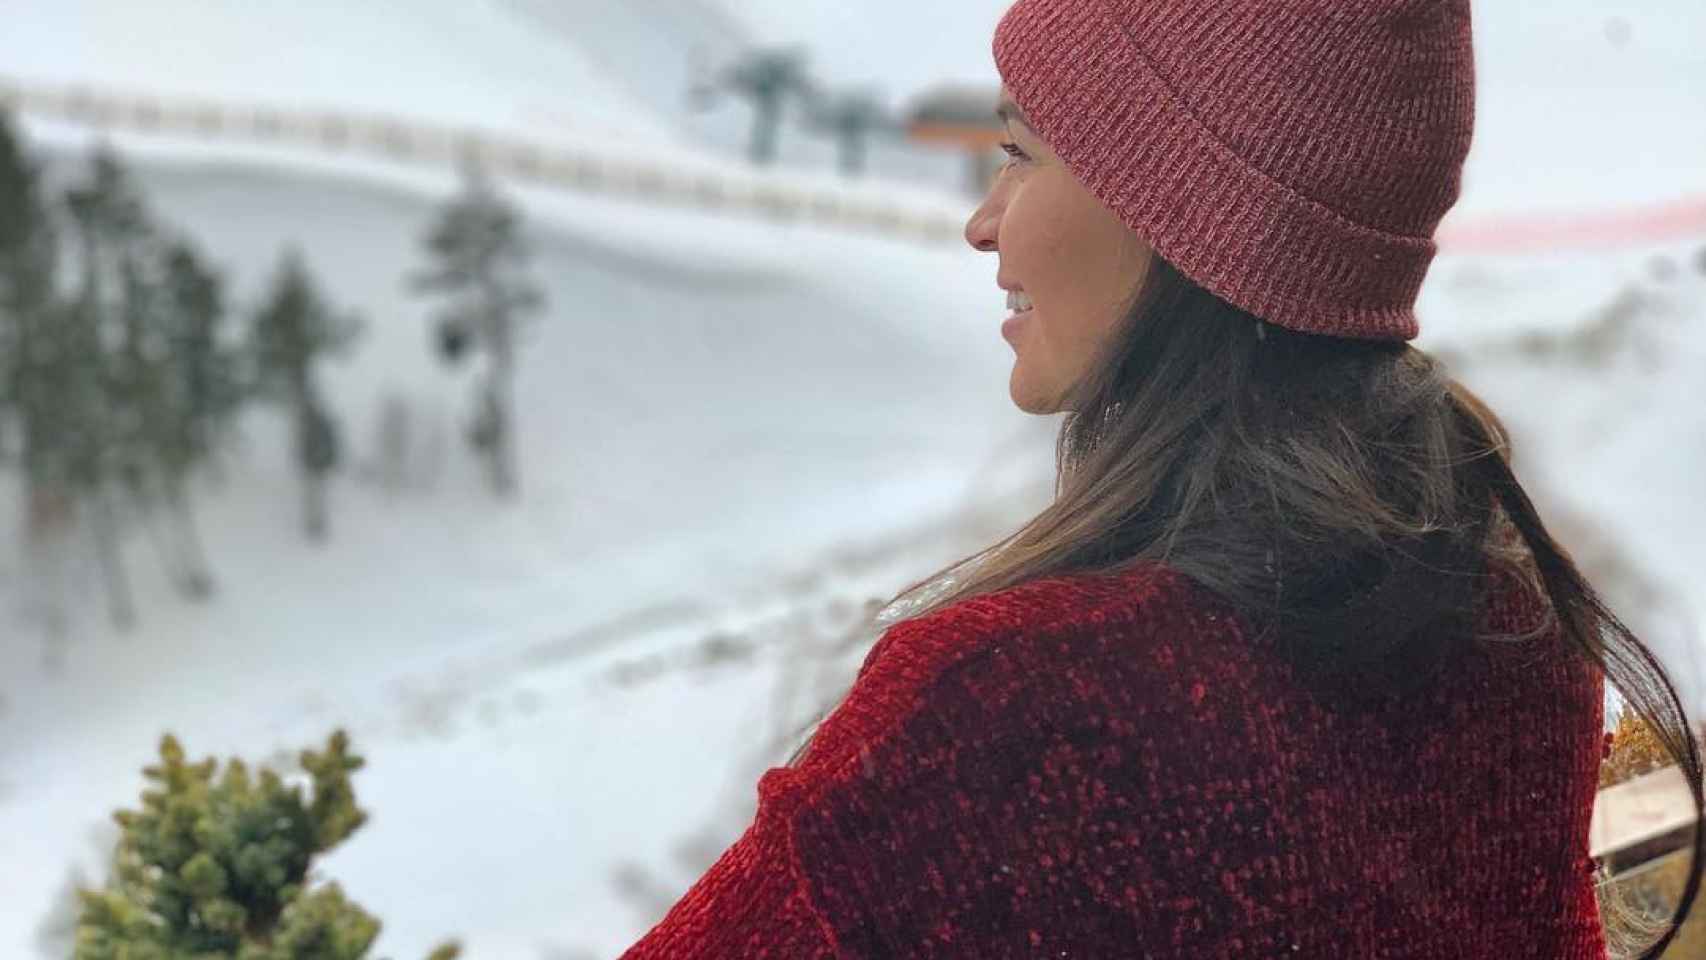 Aine Coutinho desde la ventana de un hotel de Andorra contempla las pistas de esquí / INSTAGRAM